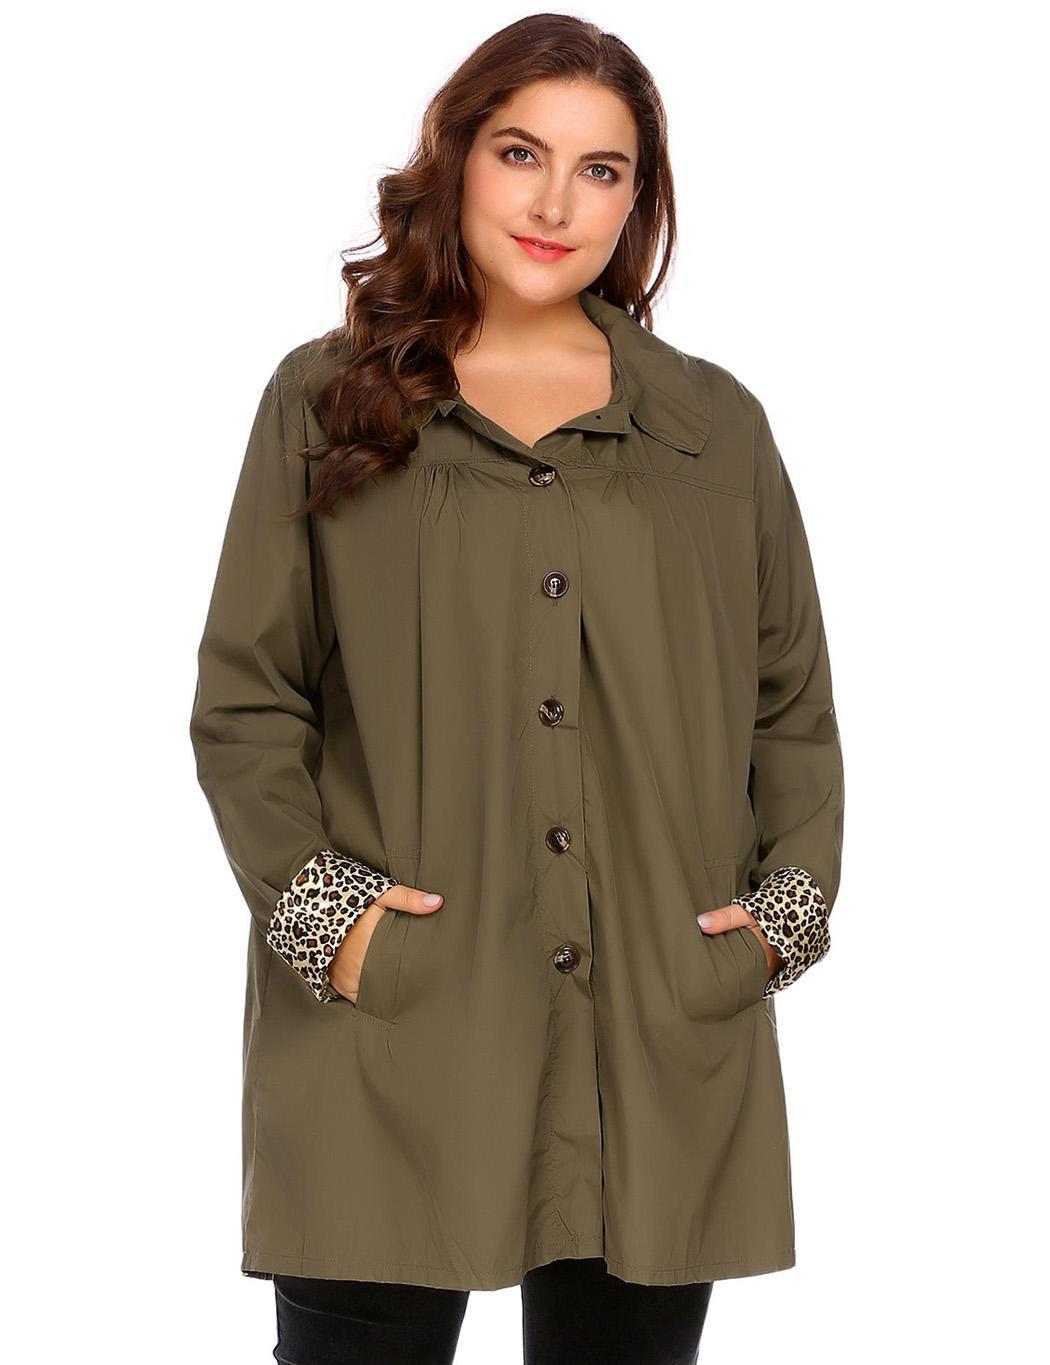 Women Plus Size Hooded Long Sleeve Lightweight Waterproof Raincoat Wt88 02 Ebay